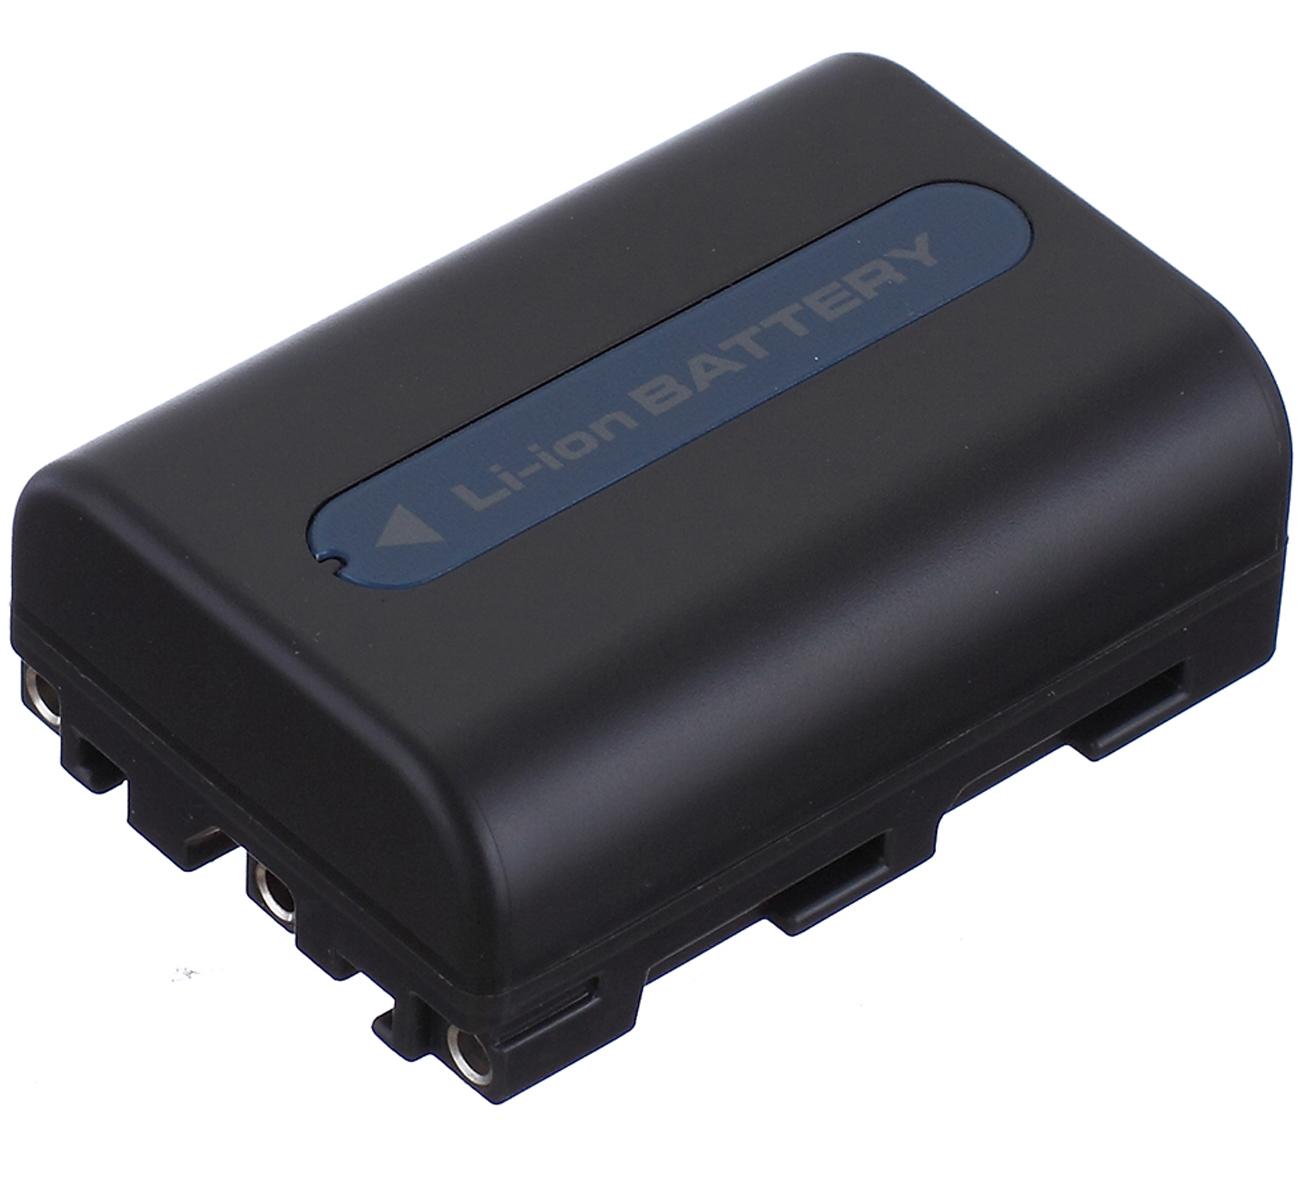 Изображение товара: Батарейный блок для видеокамеры sony DCR-TRV430, DCR-TRV460, DCR-TRV461, DCR-TRV480, DCR-TRV530, DCR-TRV530E Handycam